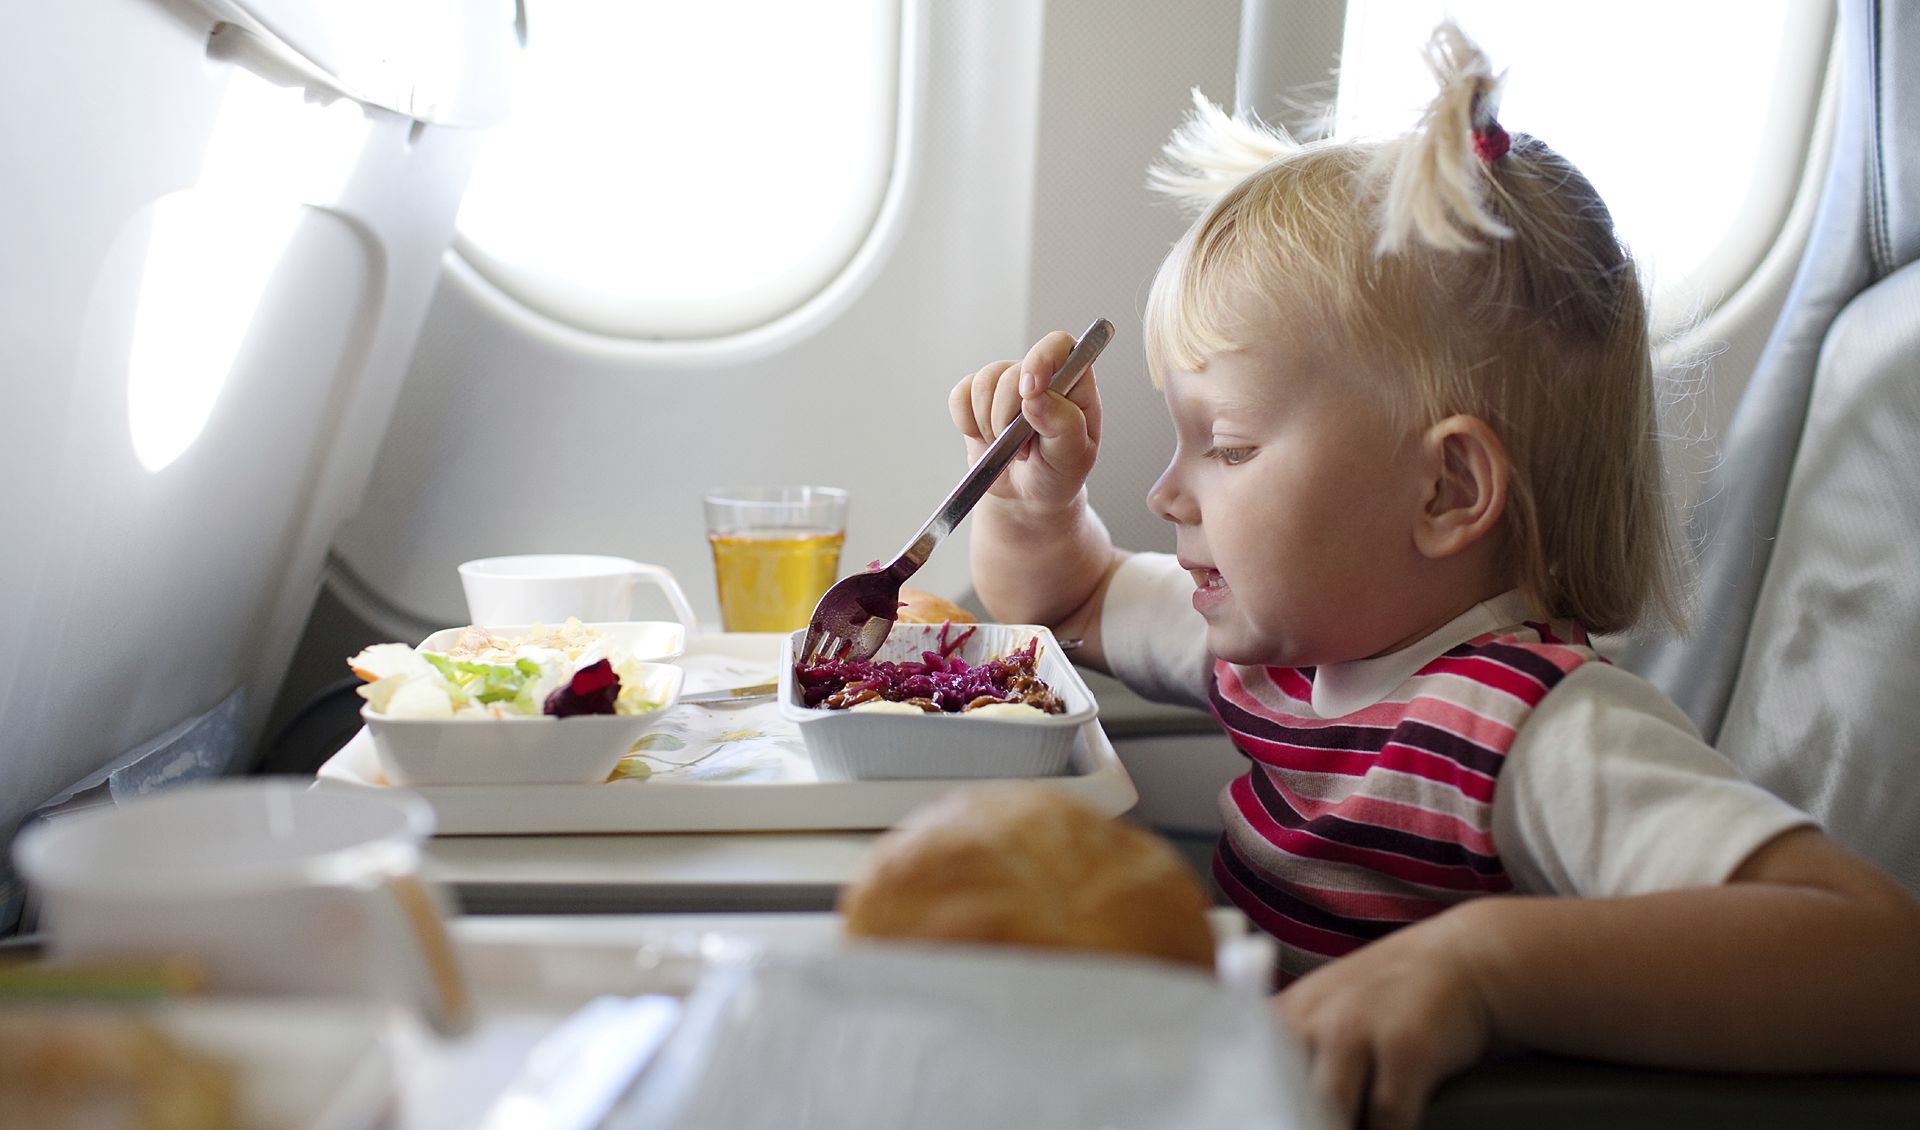 Детское питание на борту, или Как не оставить ребенка голодным в самолете